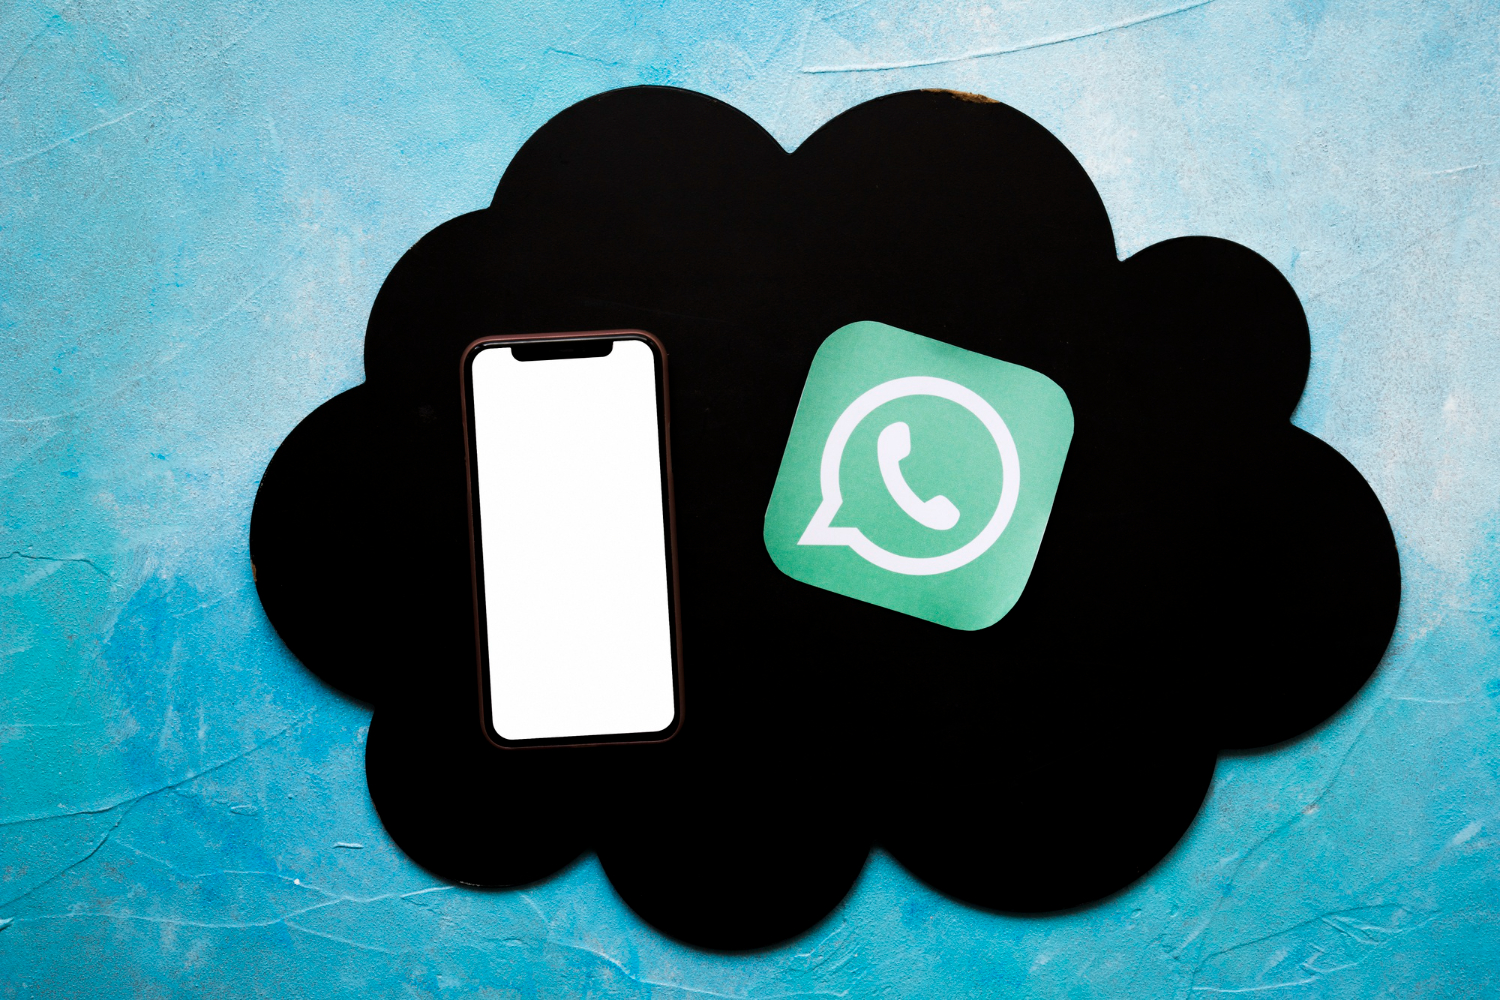 É possível usar o WhatsApp Web com o celular desligado ou desconectado